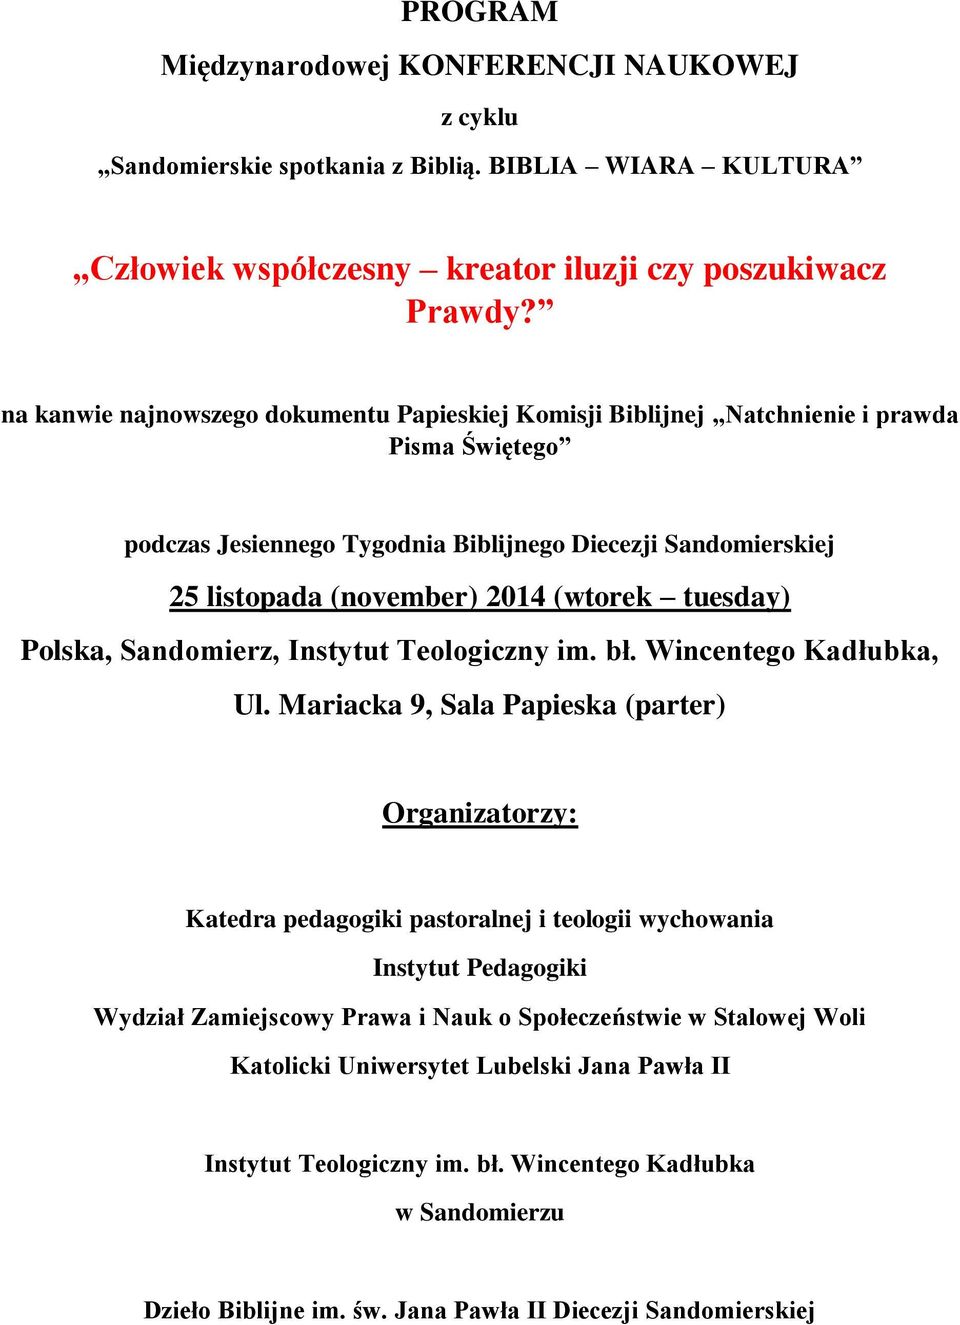 tuesday) Polska, Sandomierz, Instytut Teologiczny im. bł. Wincentego Kadłubka, Ul.